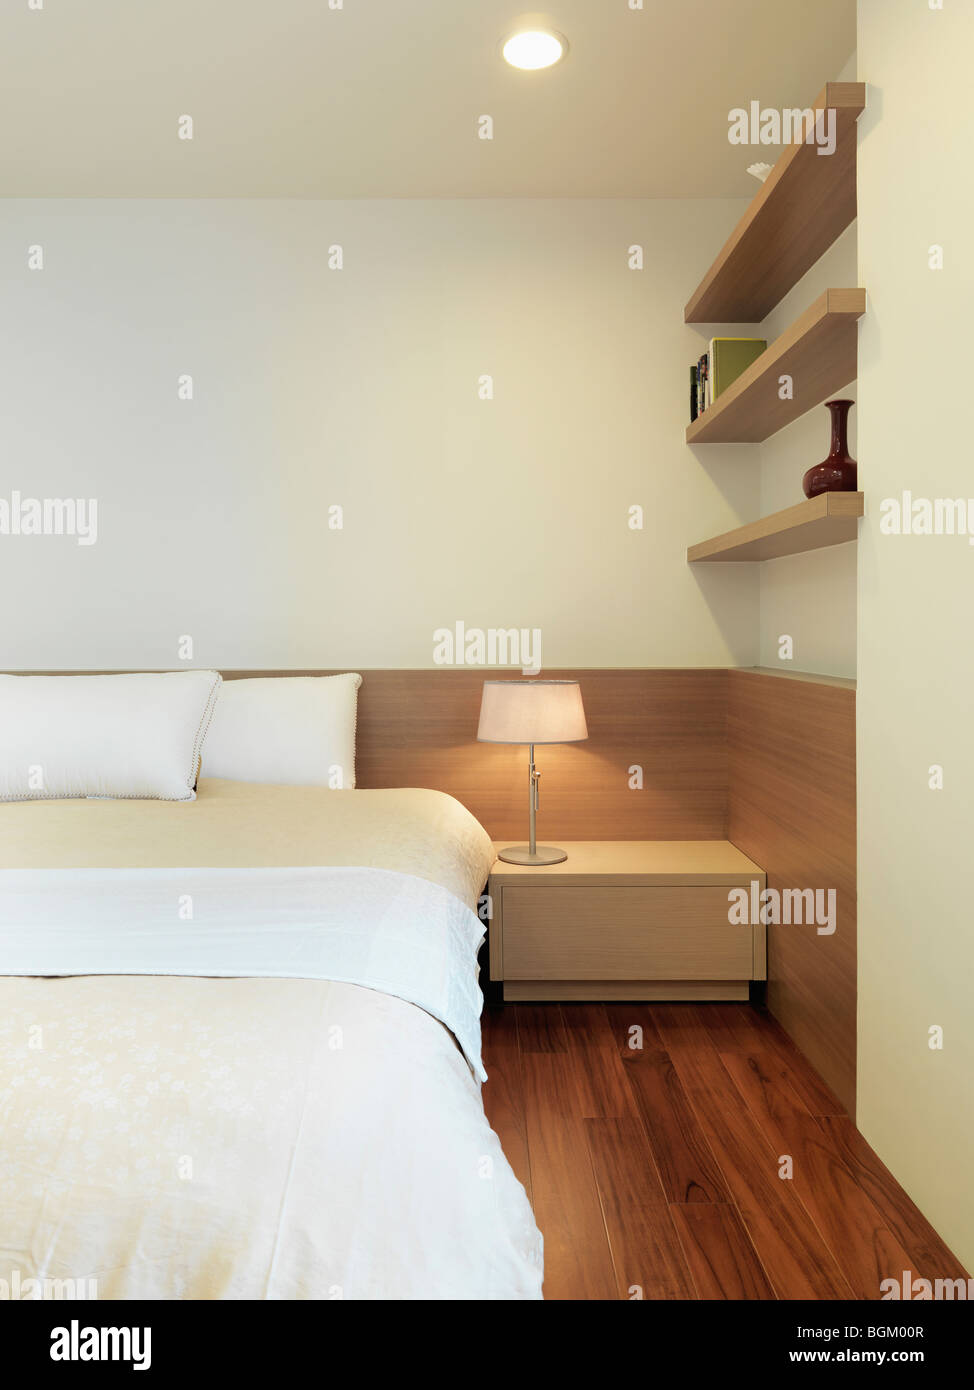 Chambre simple et moderne avec plancher de bois franc Banque D'Images